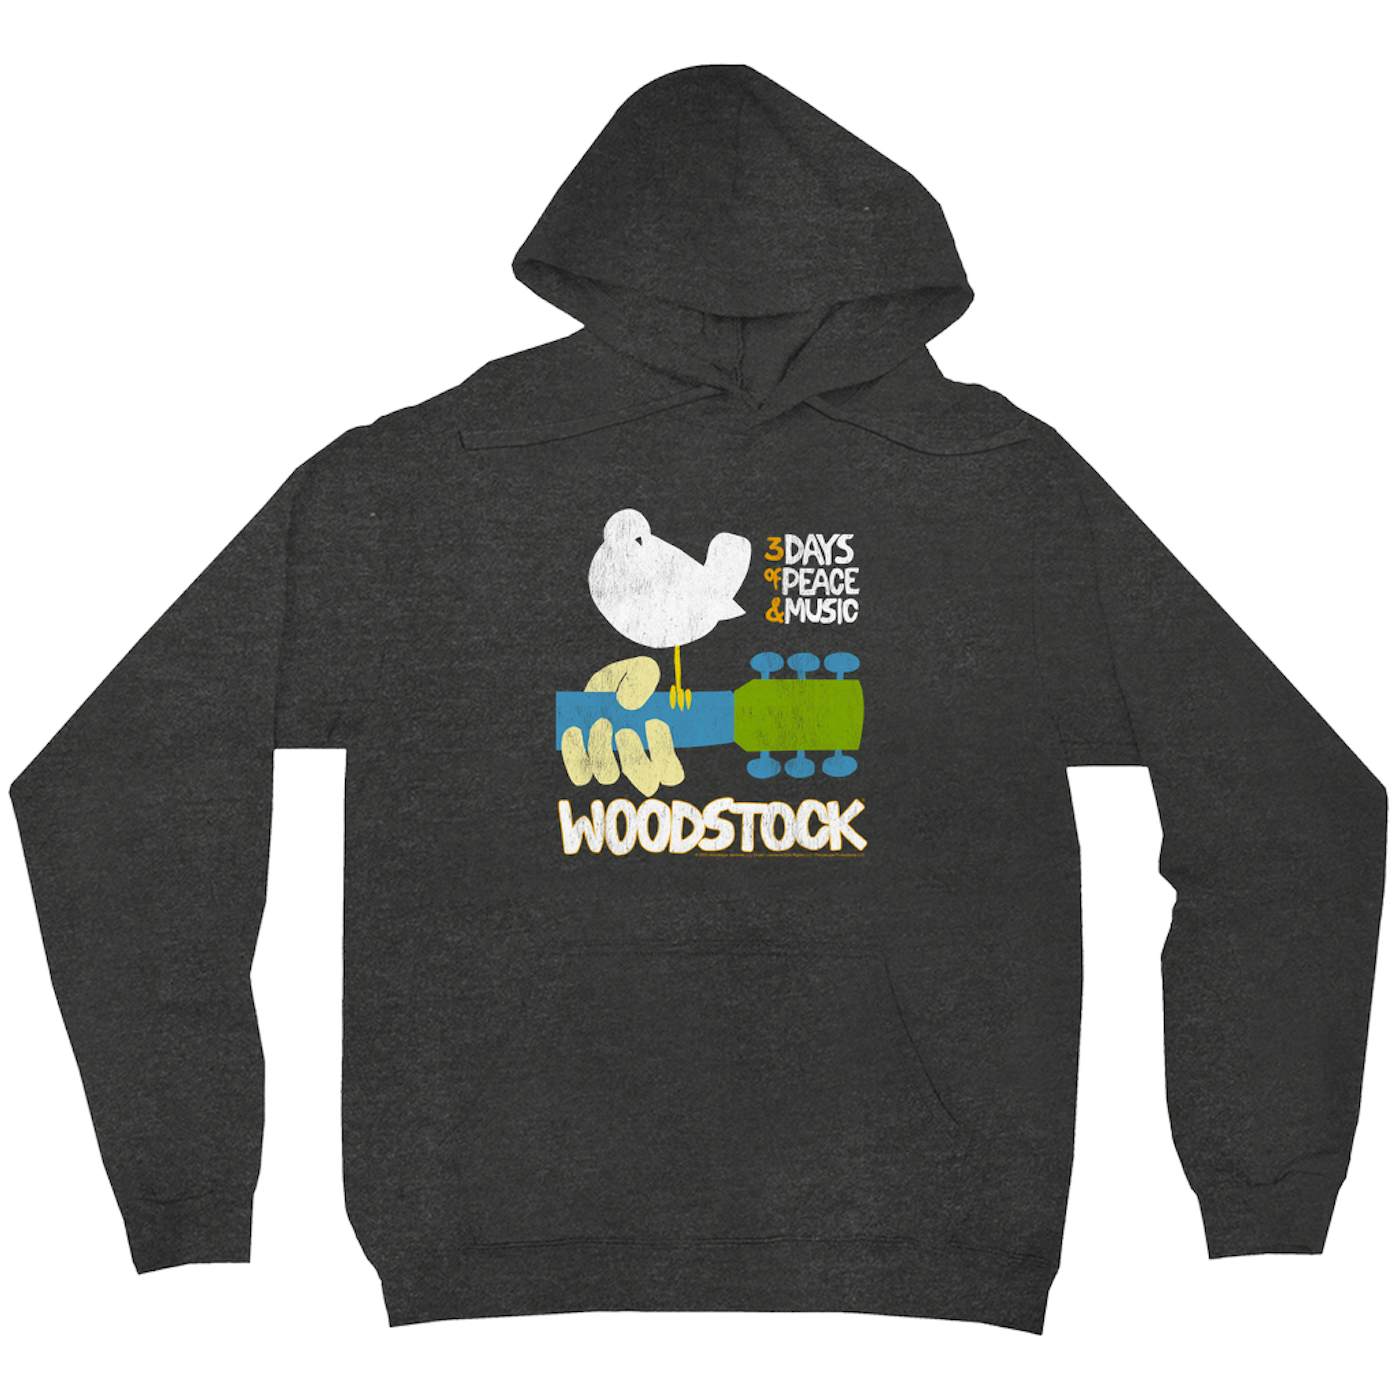 Woodstock Hoodie | 3 Days Of Peace And Music Woodstock Hoodie